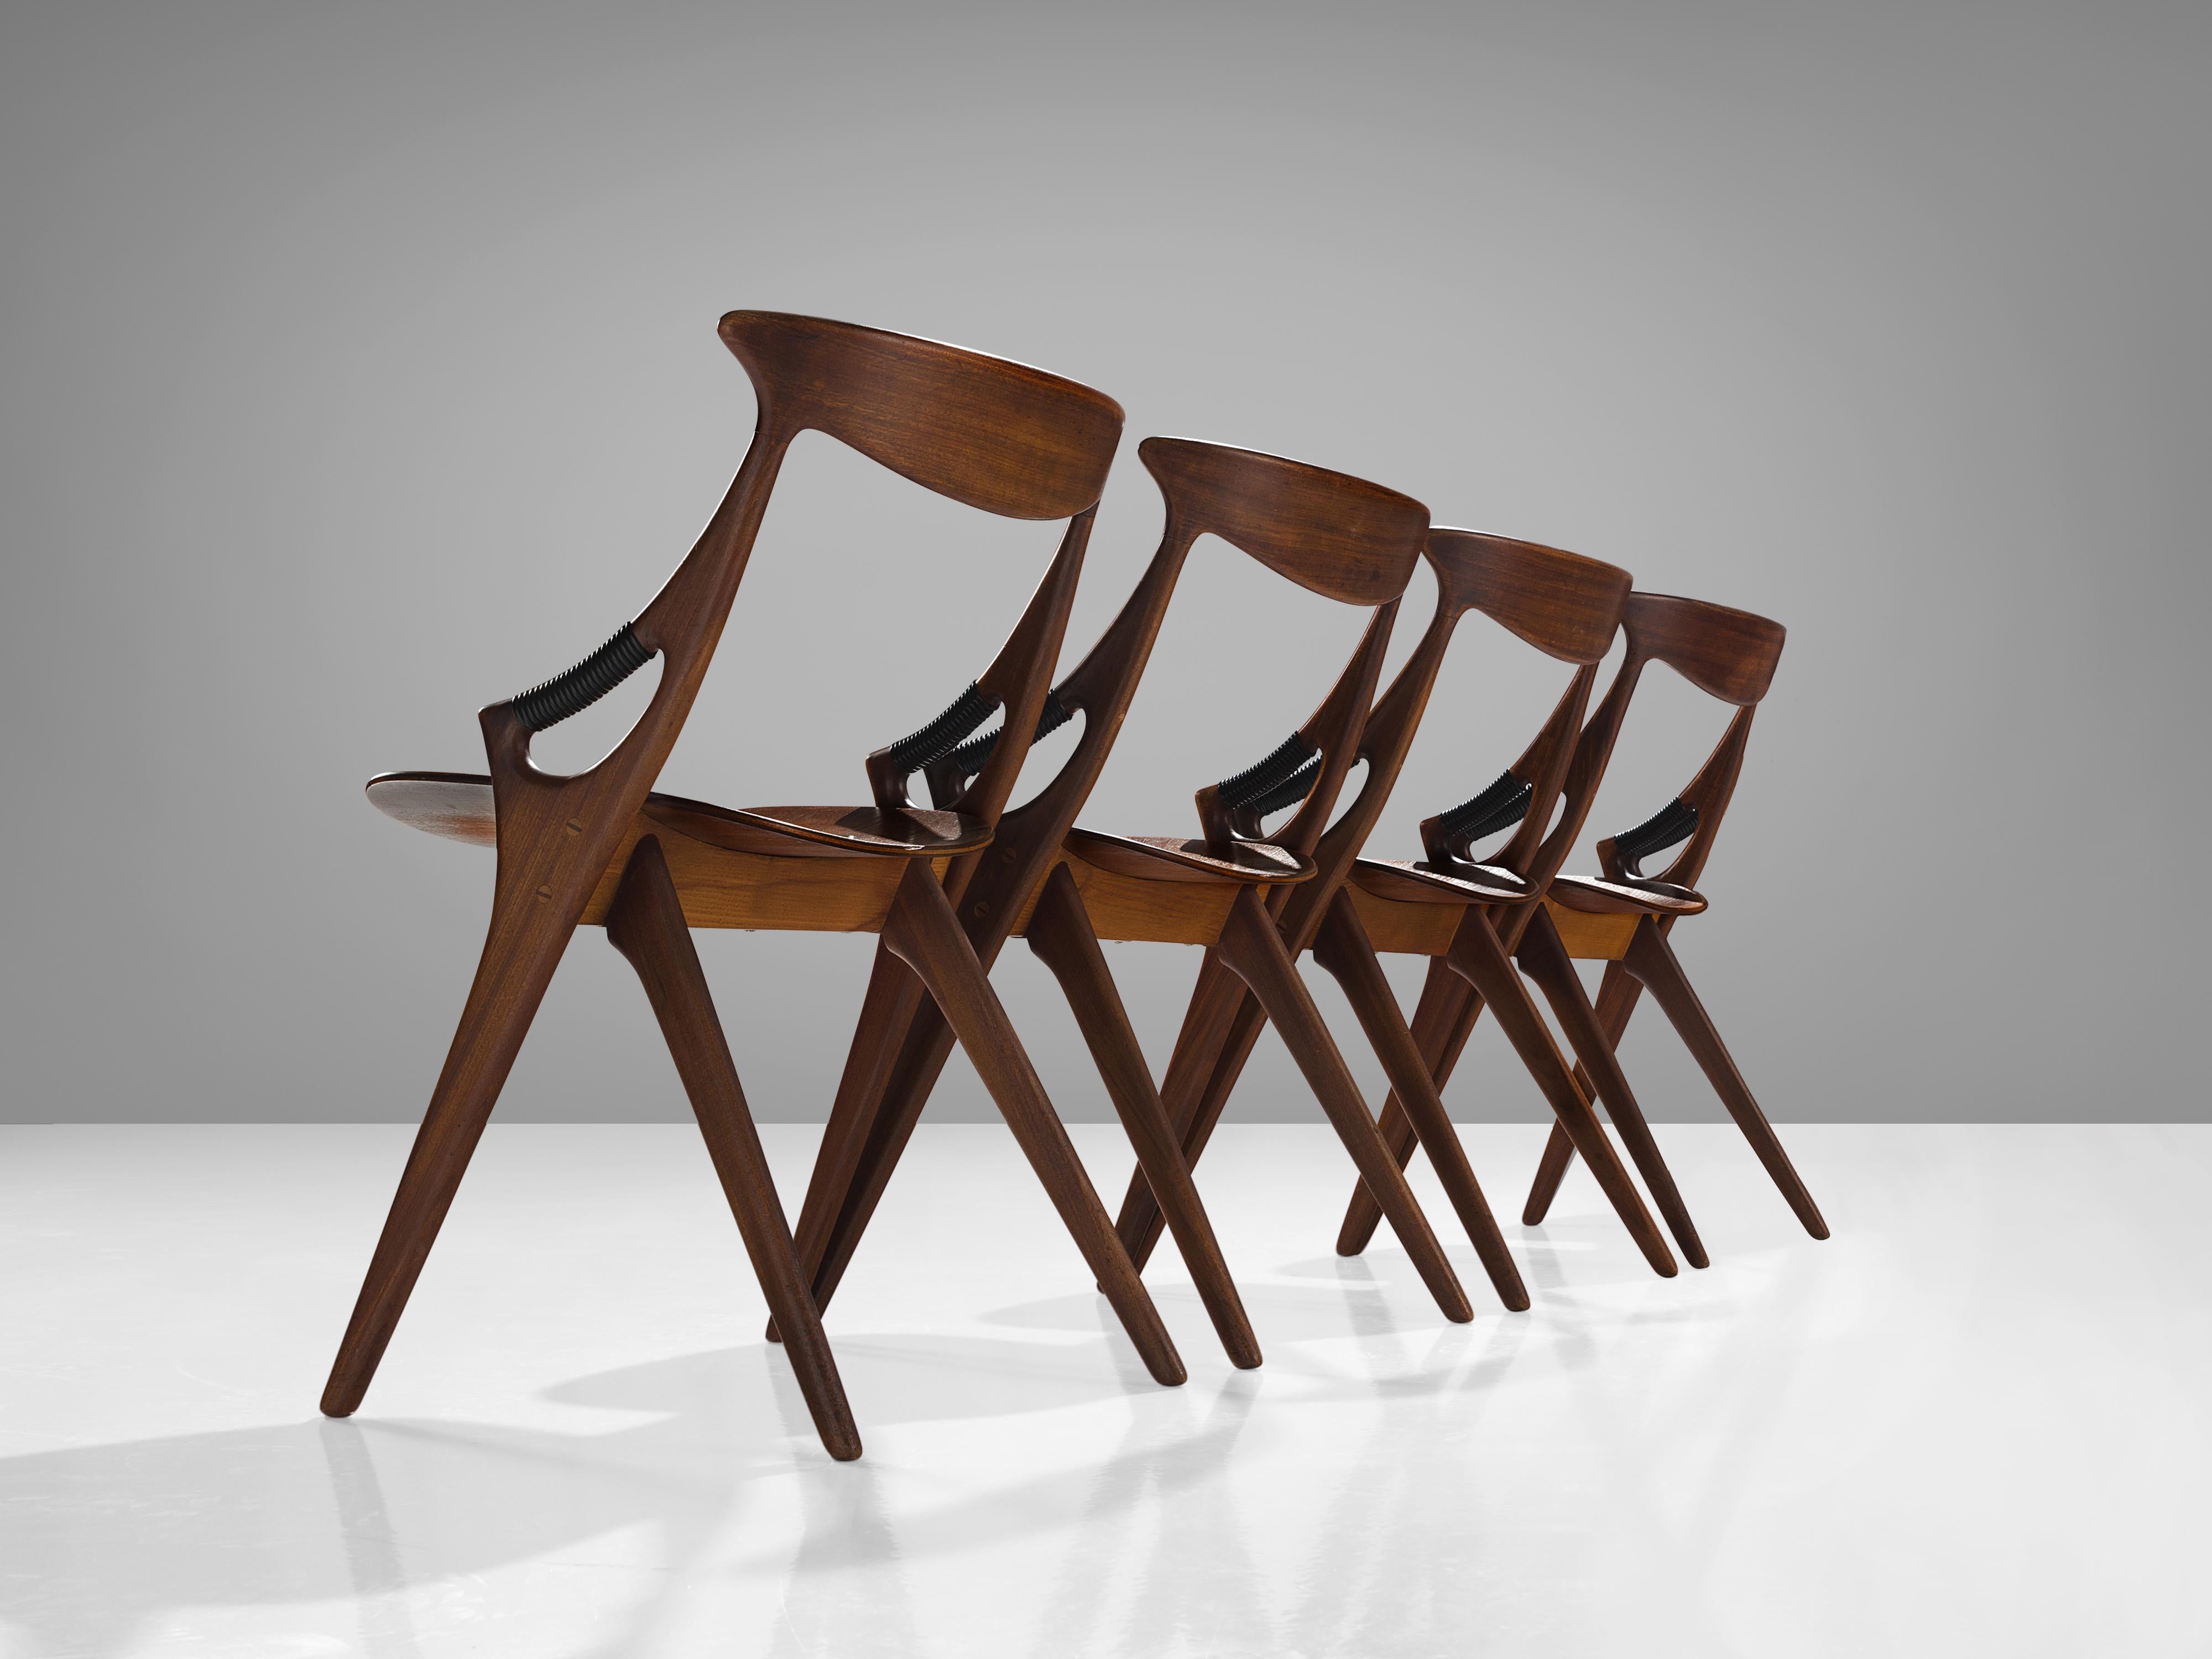 Arne Hovmand-Olsen for Mogens Kold Møbelfabrik, set of four dining chairs, model 71, mahogany, Denmark, 1959 

This sculptural set of four dining chairs is designed by the Dane Arne Hovmand-Olsen for for Mogens Kold Møbelfabrik. The chairs are